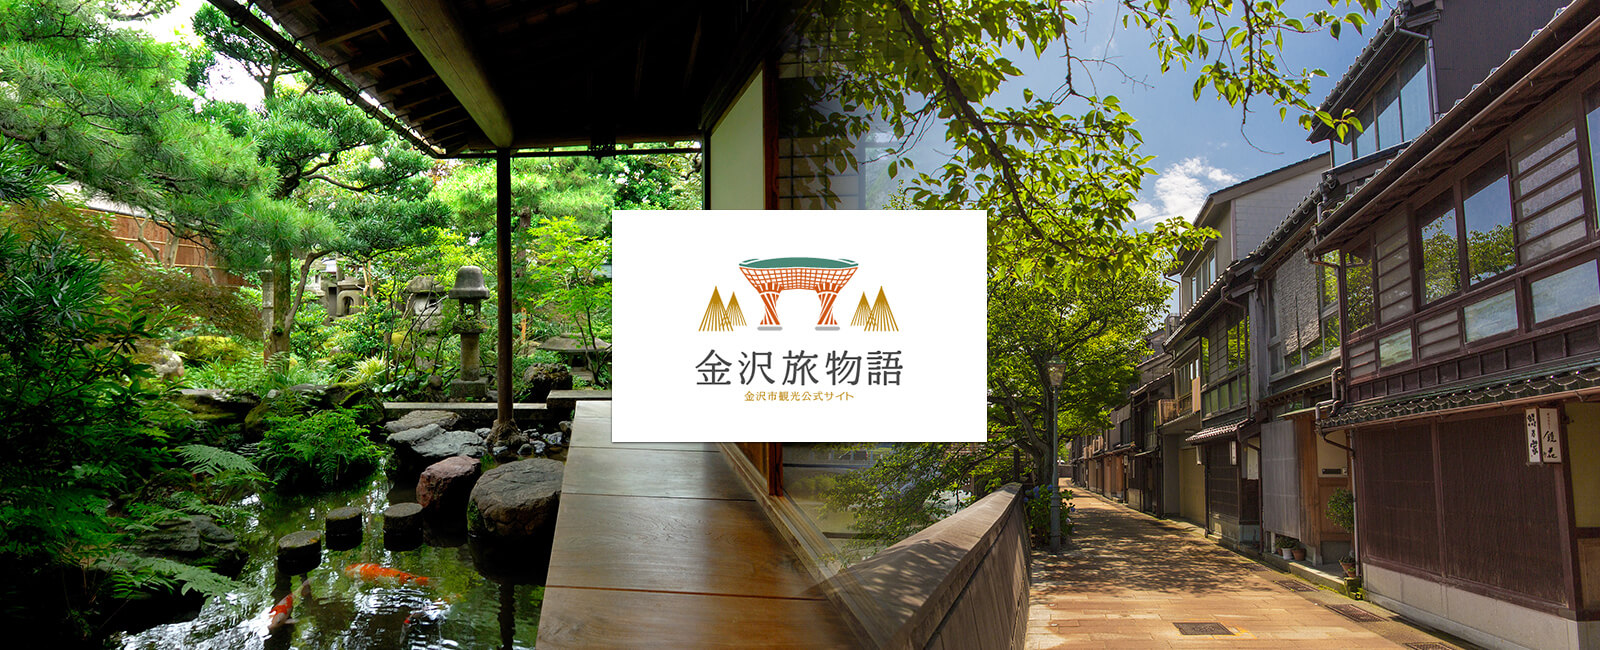 金沢旅物語 金沢市観光公式サイト